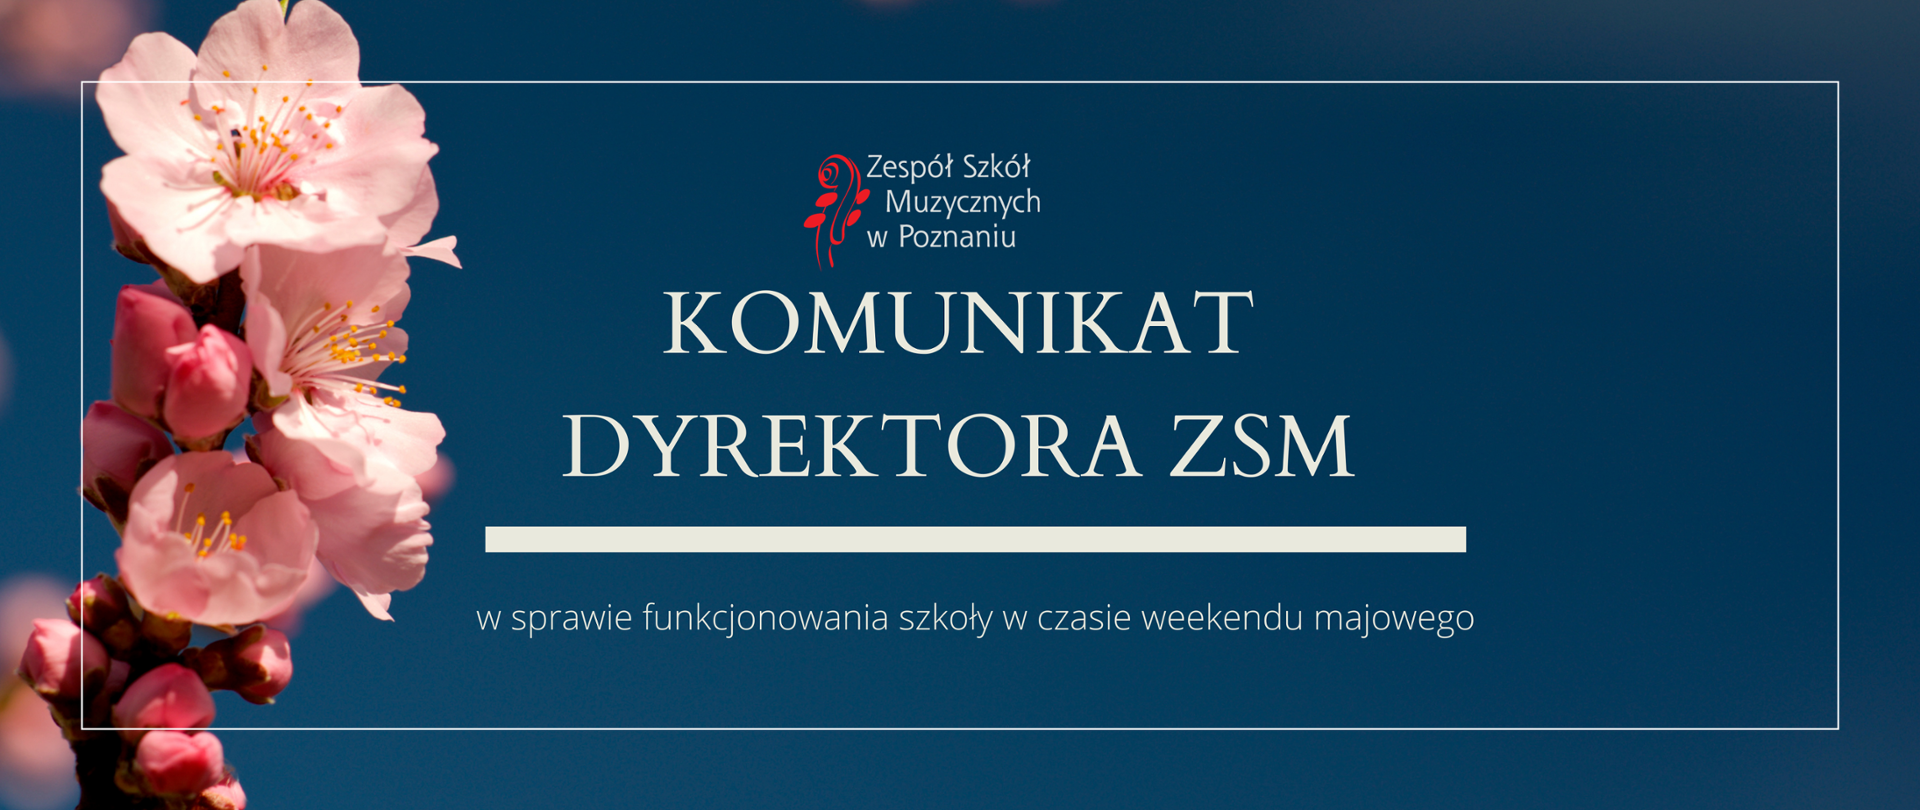 Granatowa grafika z gałązką różowych kwiatów z logo ZSM i tekstem /"KOMUNIKAT DYREKTORA ZSM w sprawie funkcjonowania szkoły w czasie weekendu majowego"/